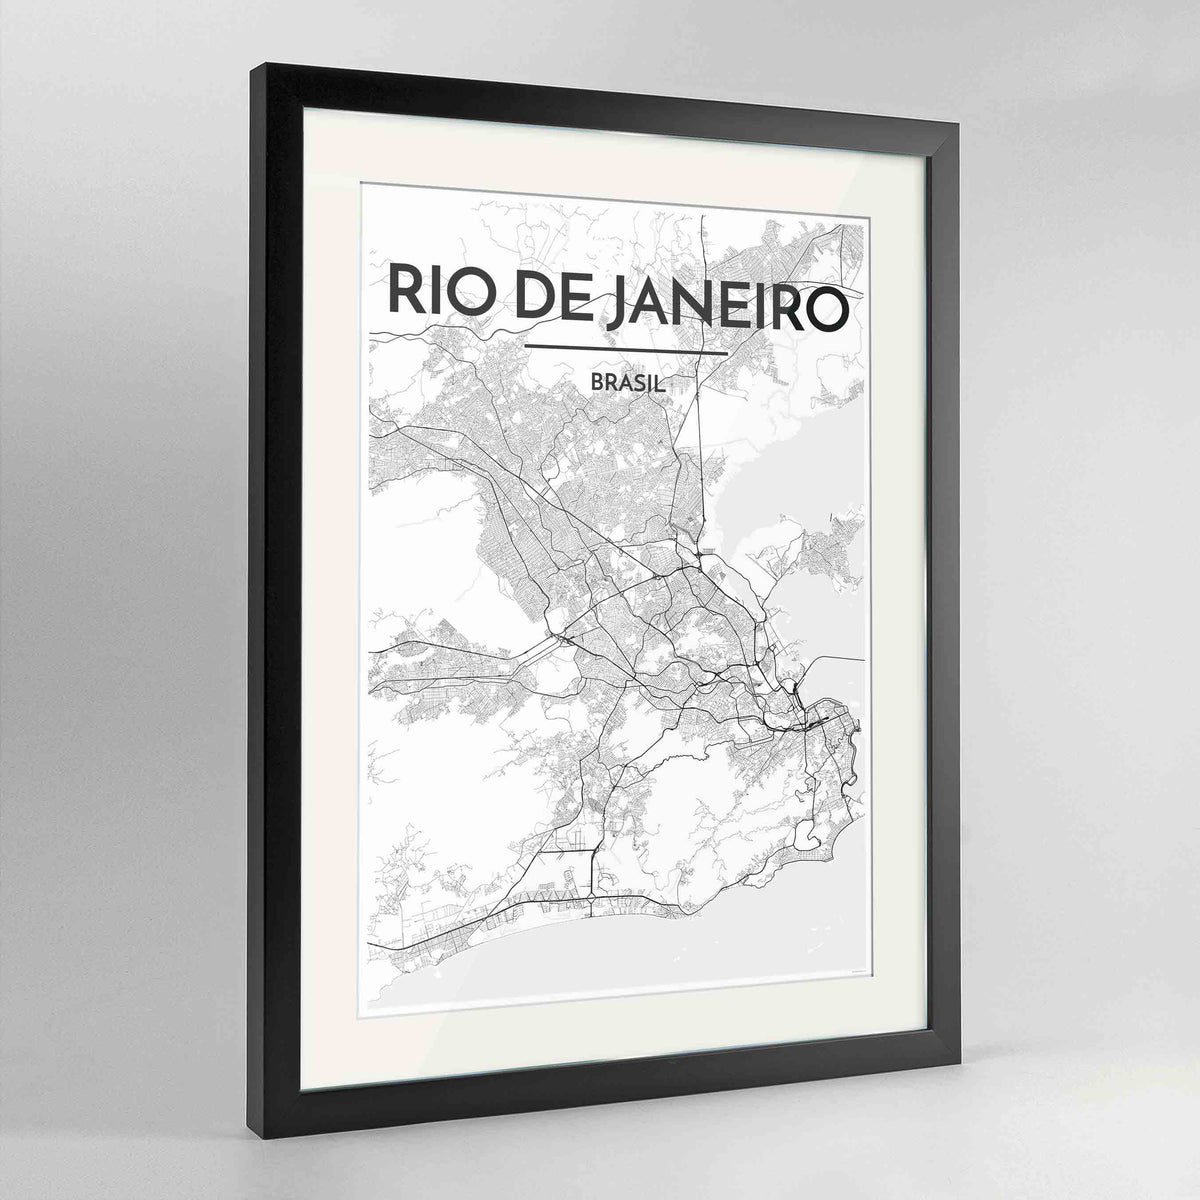 Framed Rio de Janeiro Map Art Print 24x36&quot; Contemporary Black frame Point Two Design Group